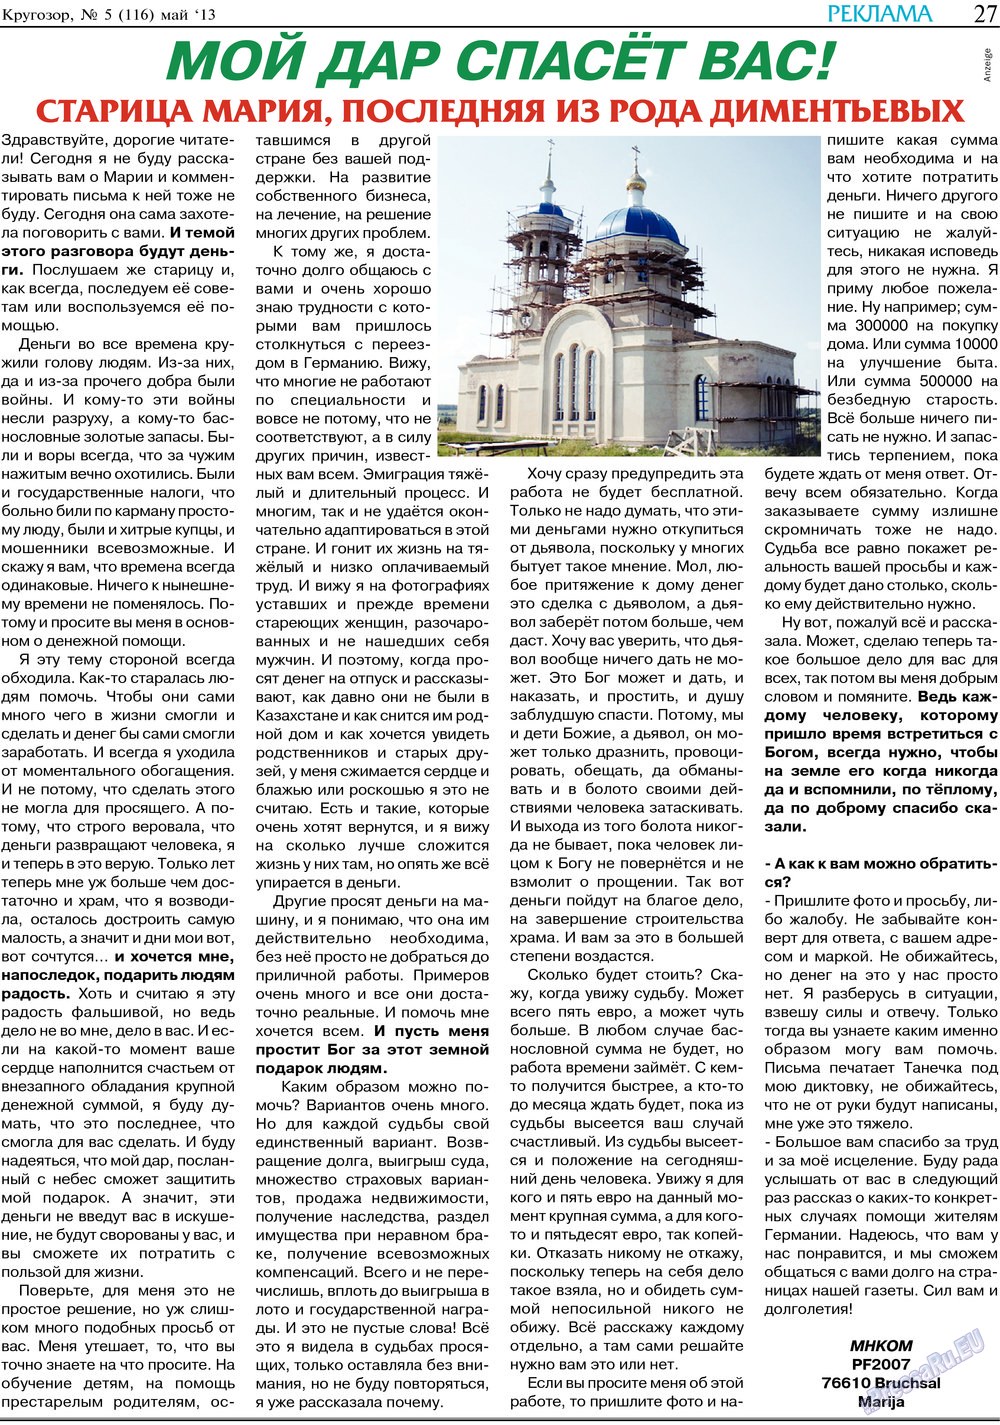 Кругозор, газета. 2013 №5 стр.27